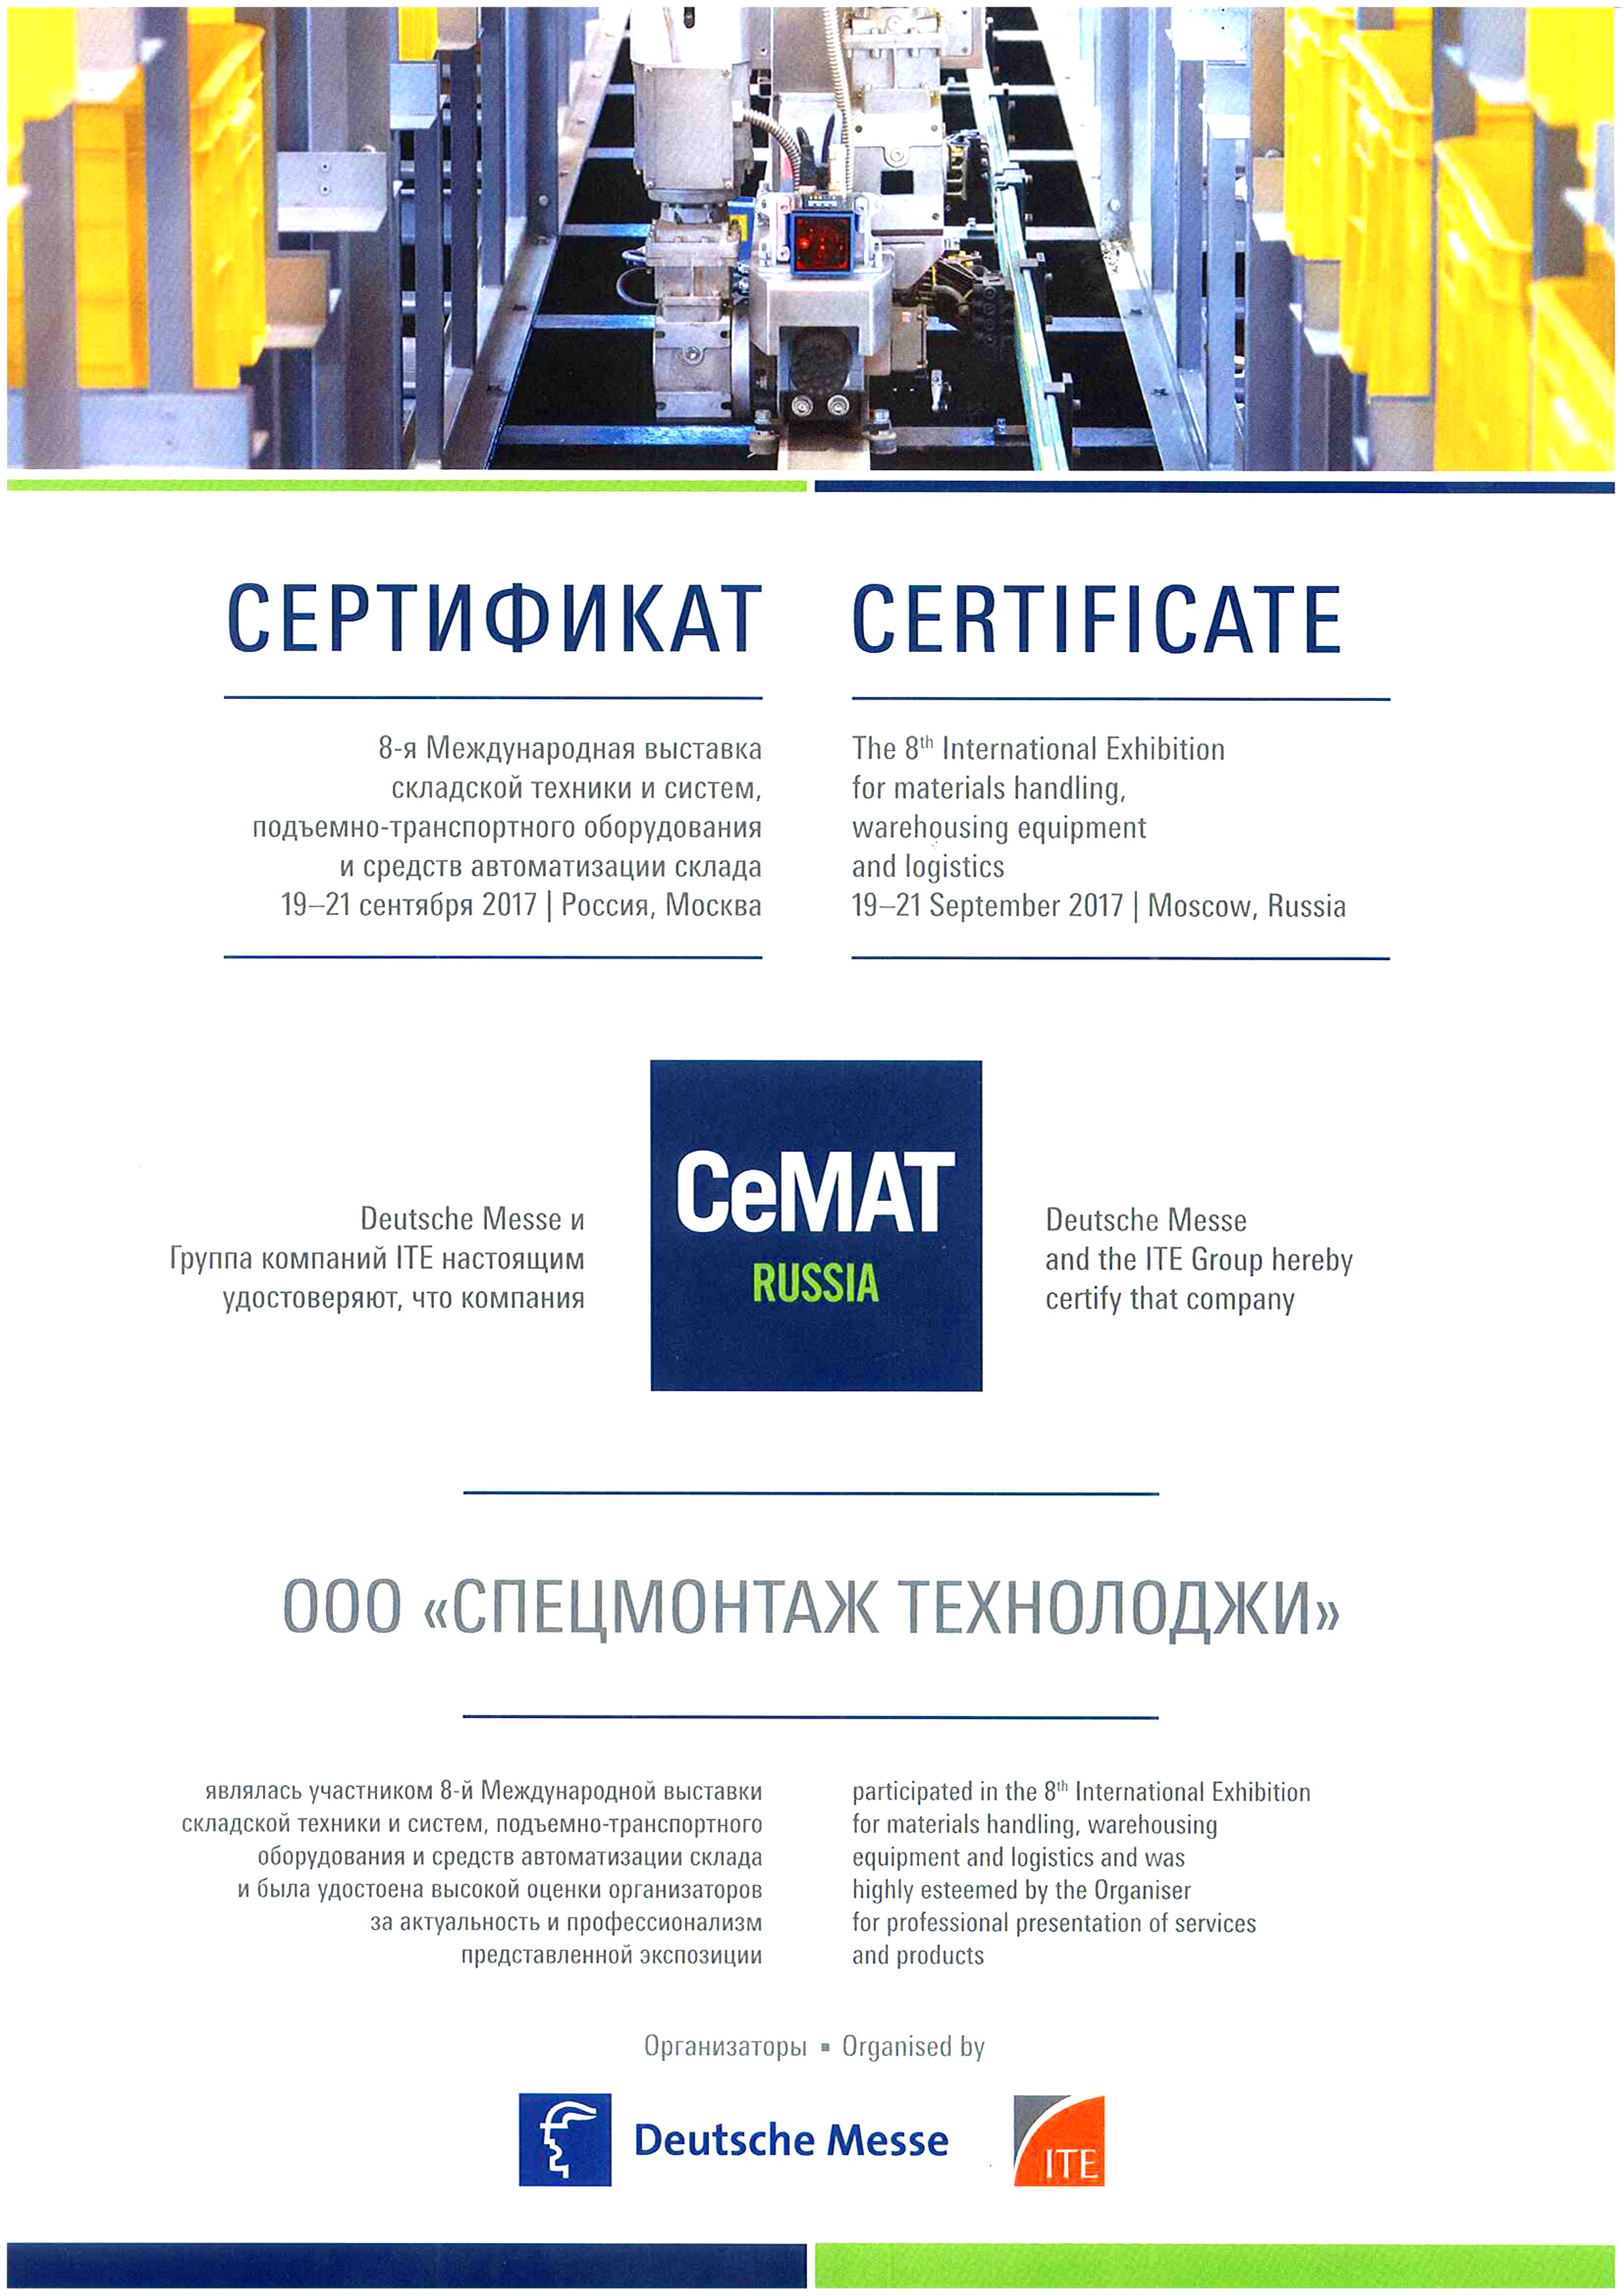 Сертификат участия Line-Safety в выставке CeMAT 2017 Russia